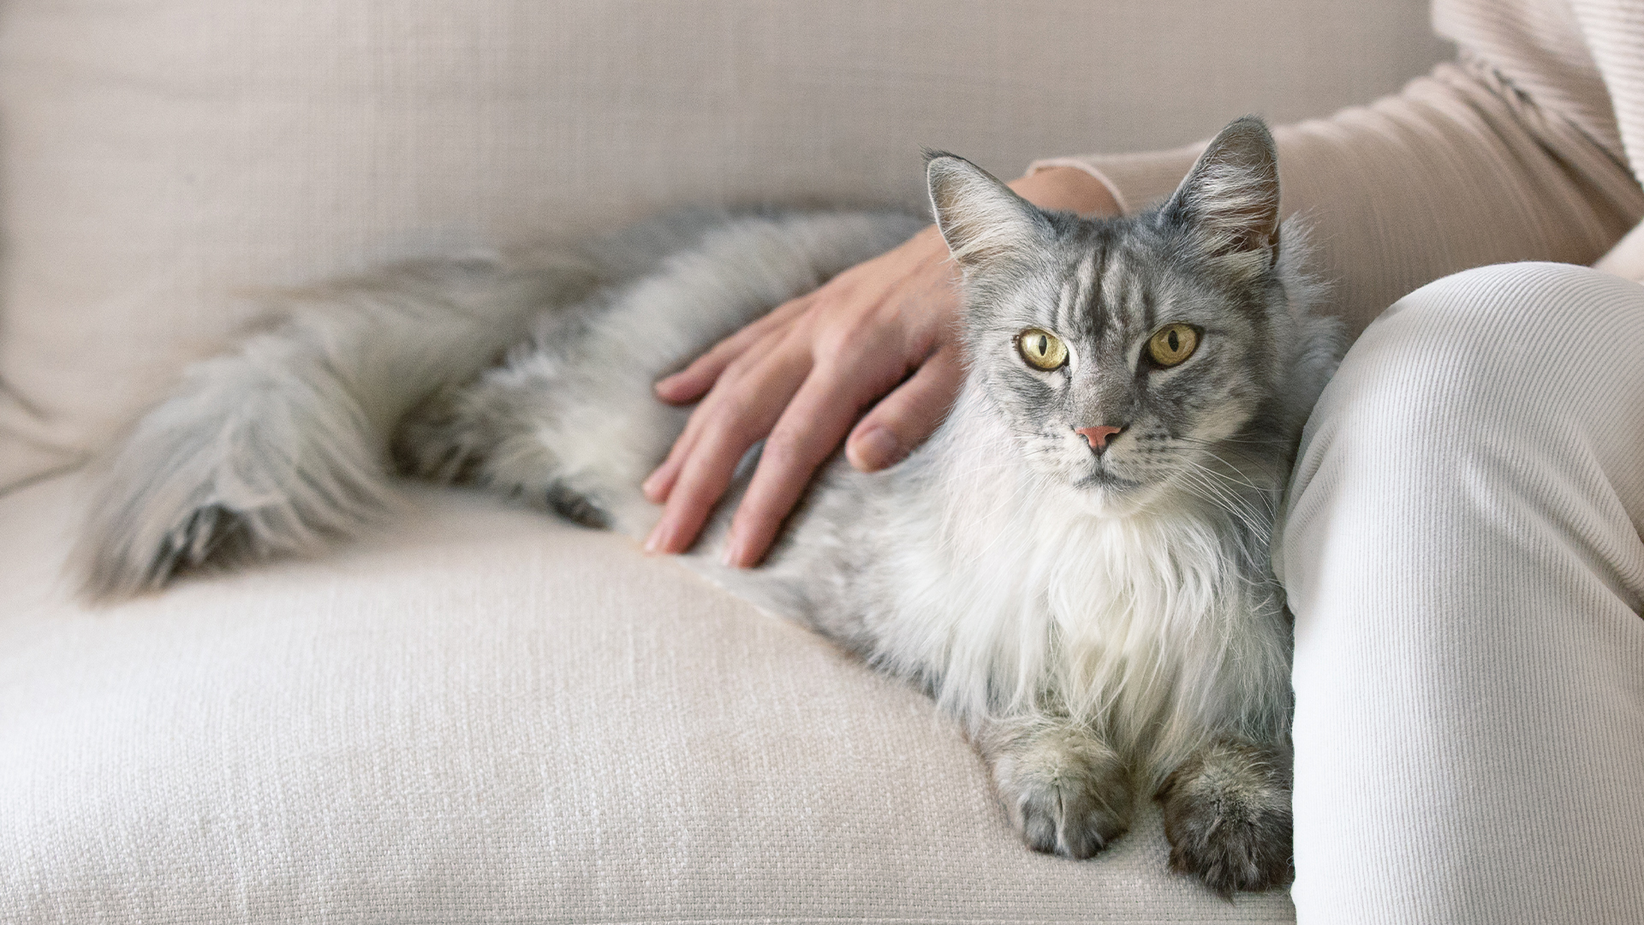 Дугодлака сива мачка лежи на софи са руком власника на леђима